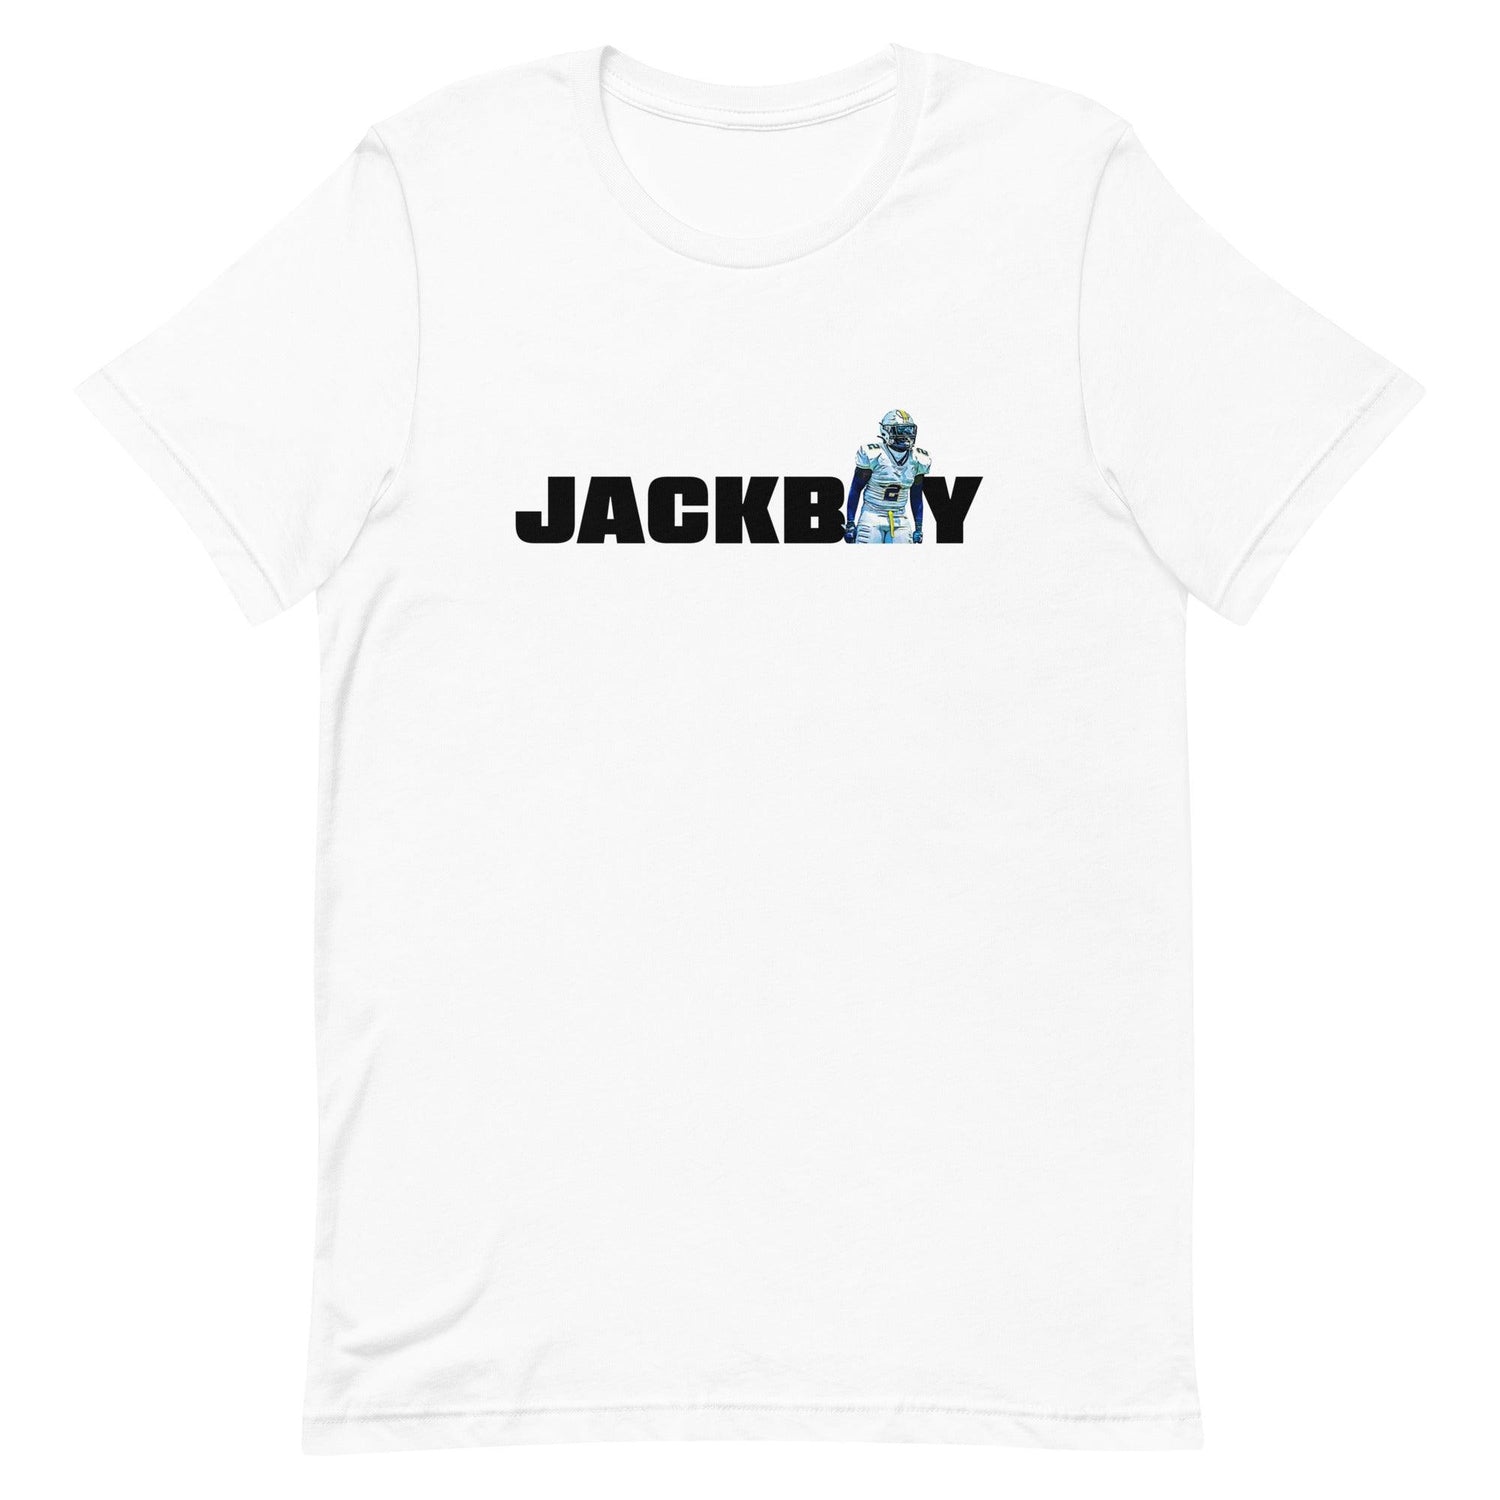 Jalen Mitchell "Jersey" t-shirt - Fan Arch